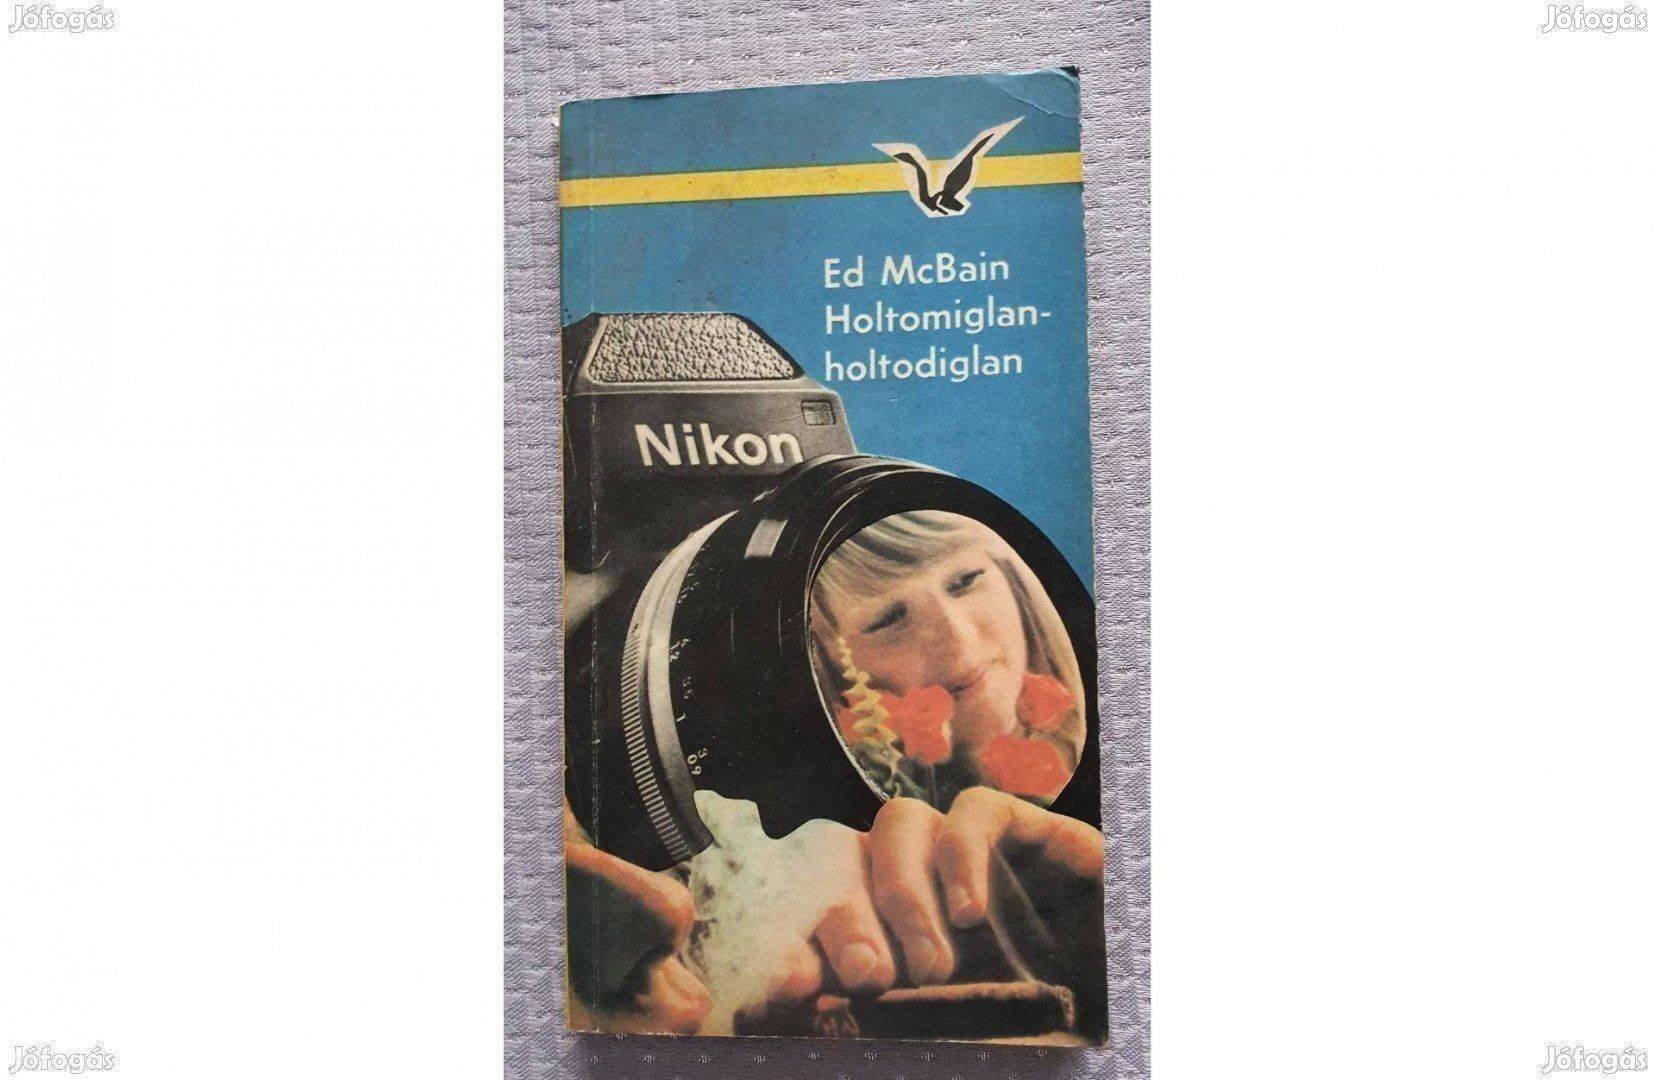 Ed Mcbain: Holtomiglan-holtodiglan Albatrosz könyv (krimi, akció) 1978